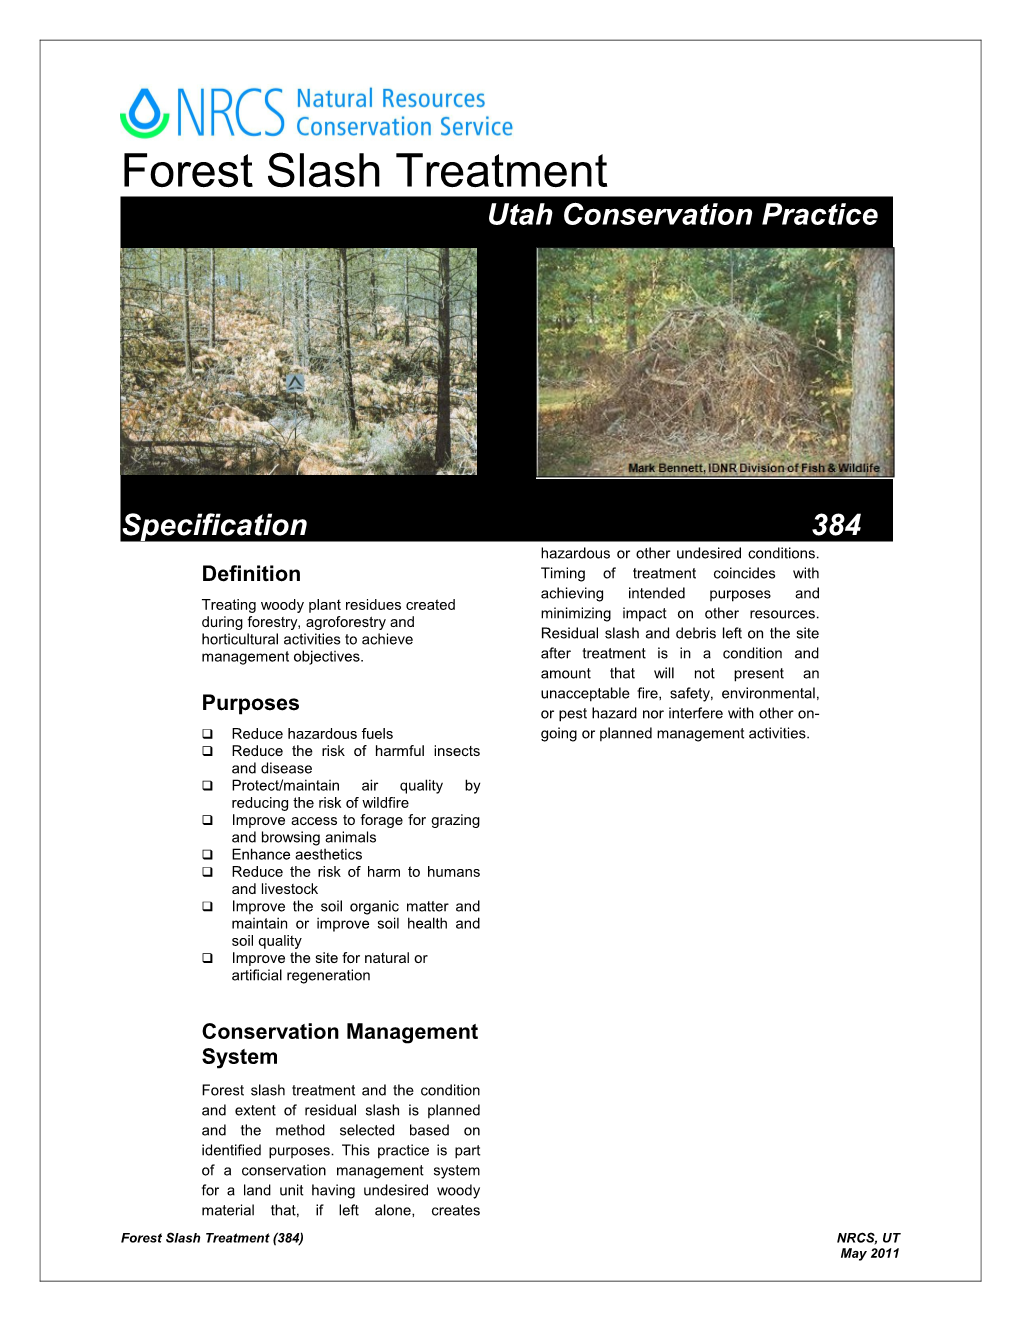 Forest Slashtreatment